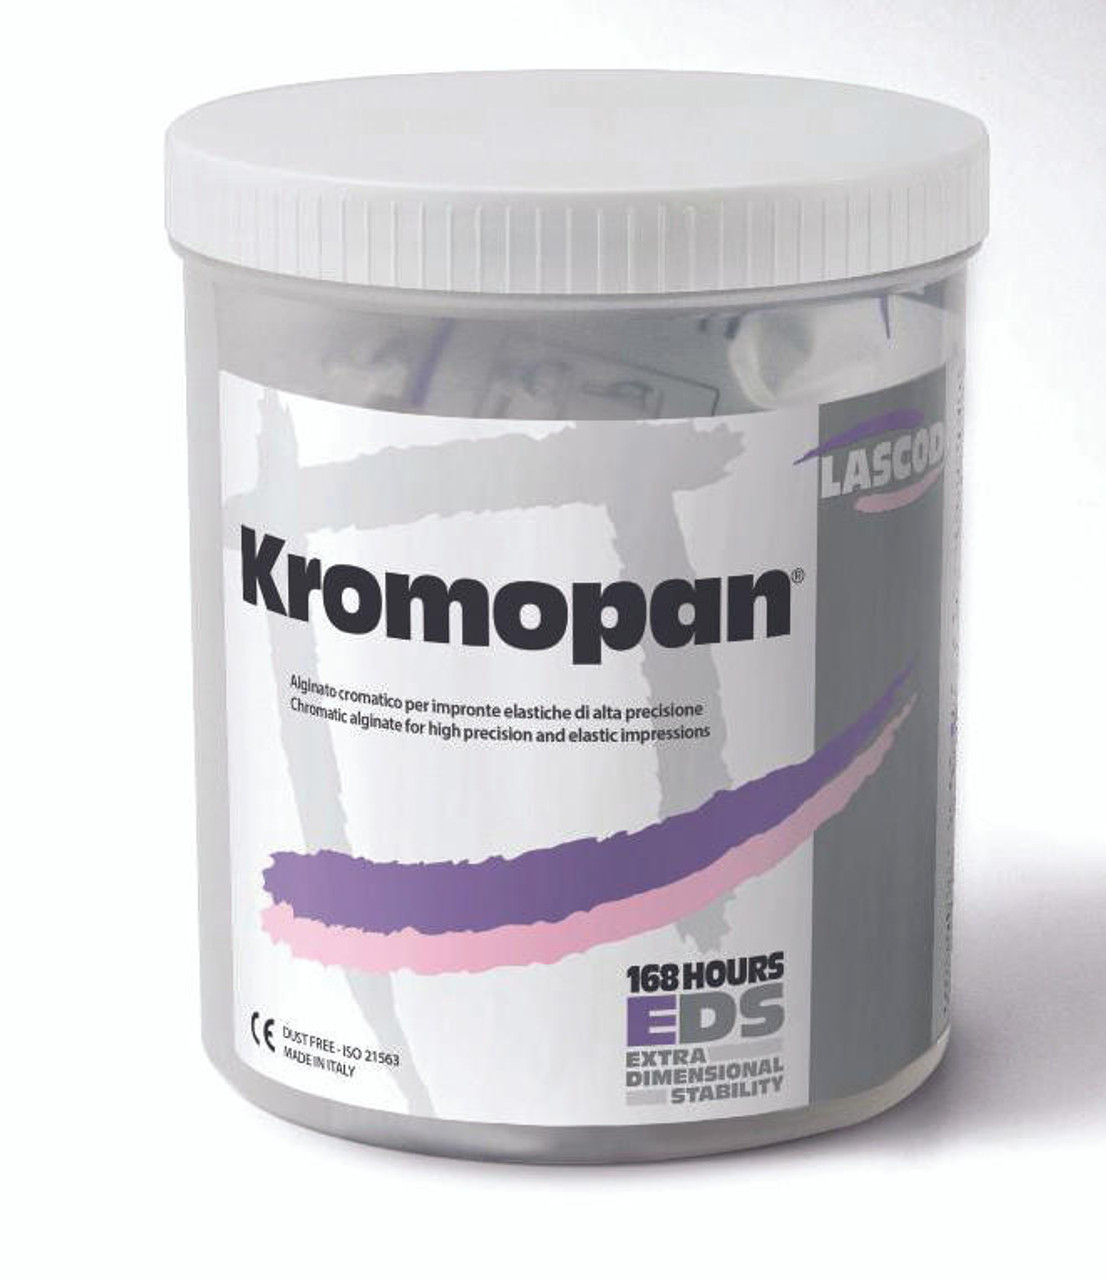 Kromopan: Chromatic Dental Alginate